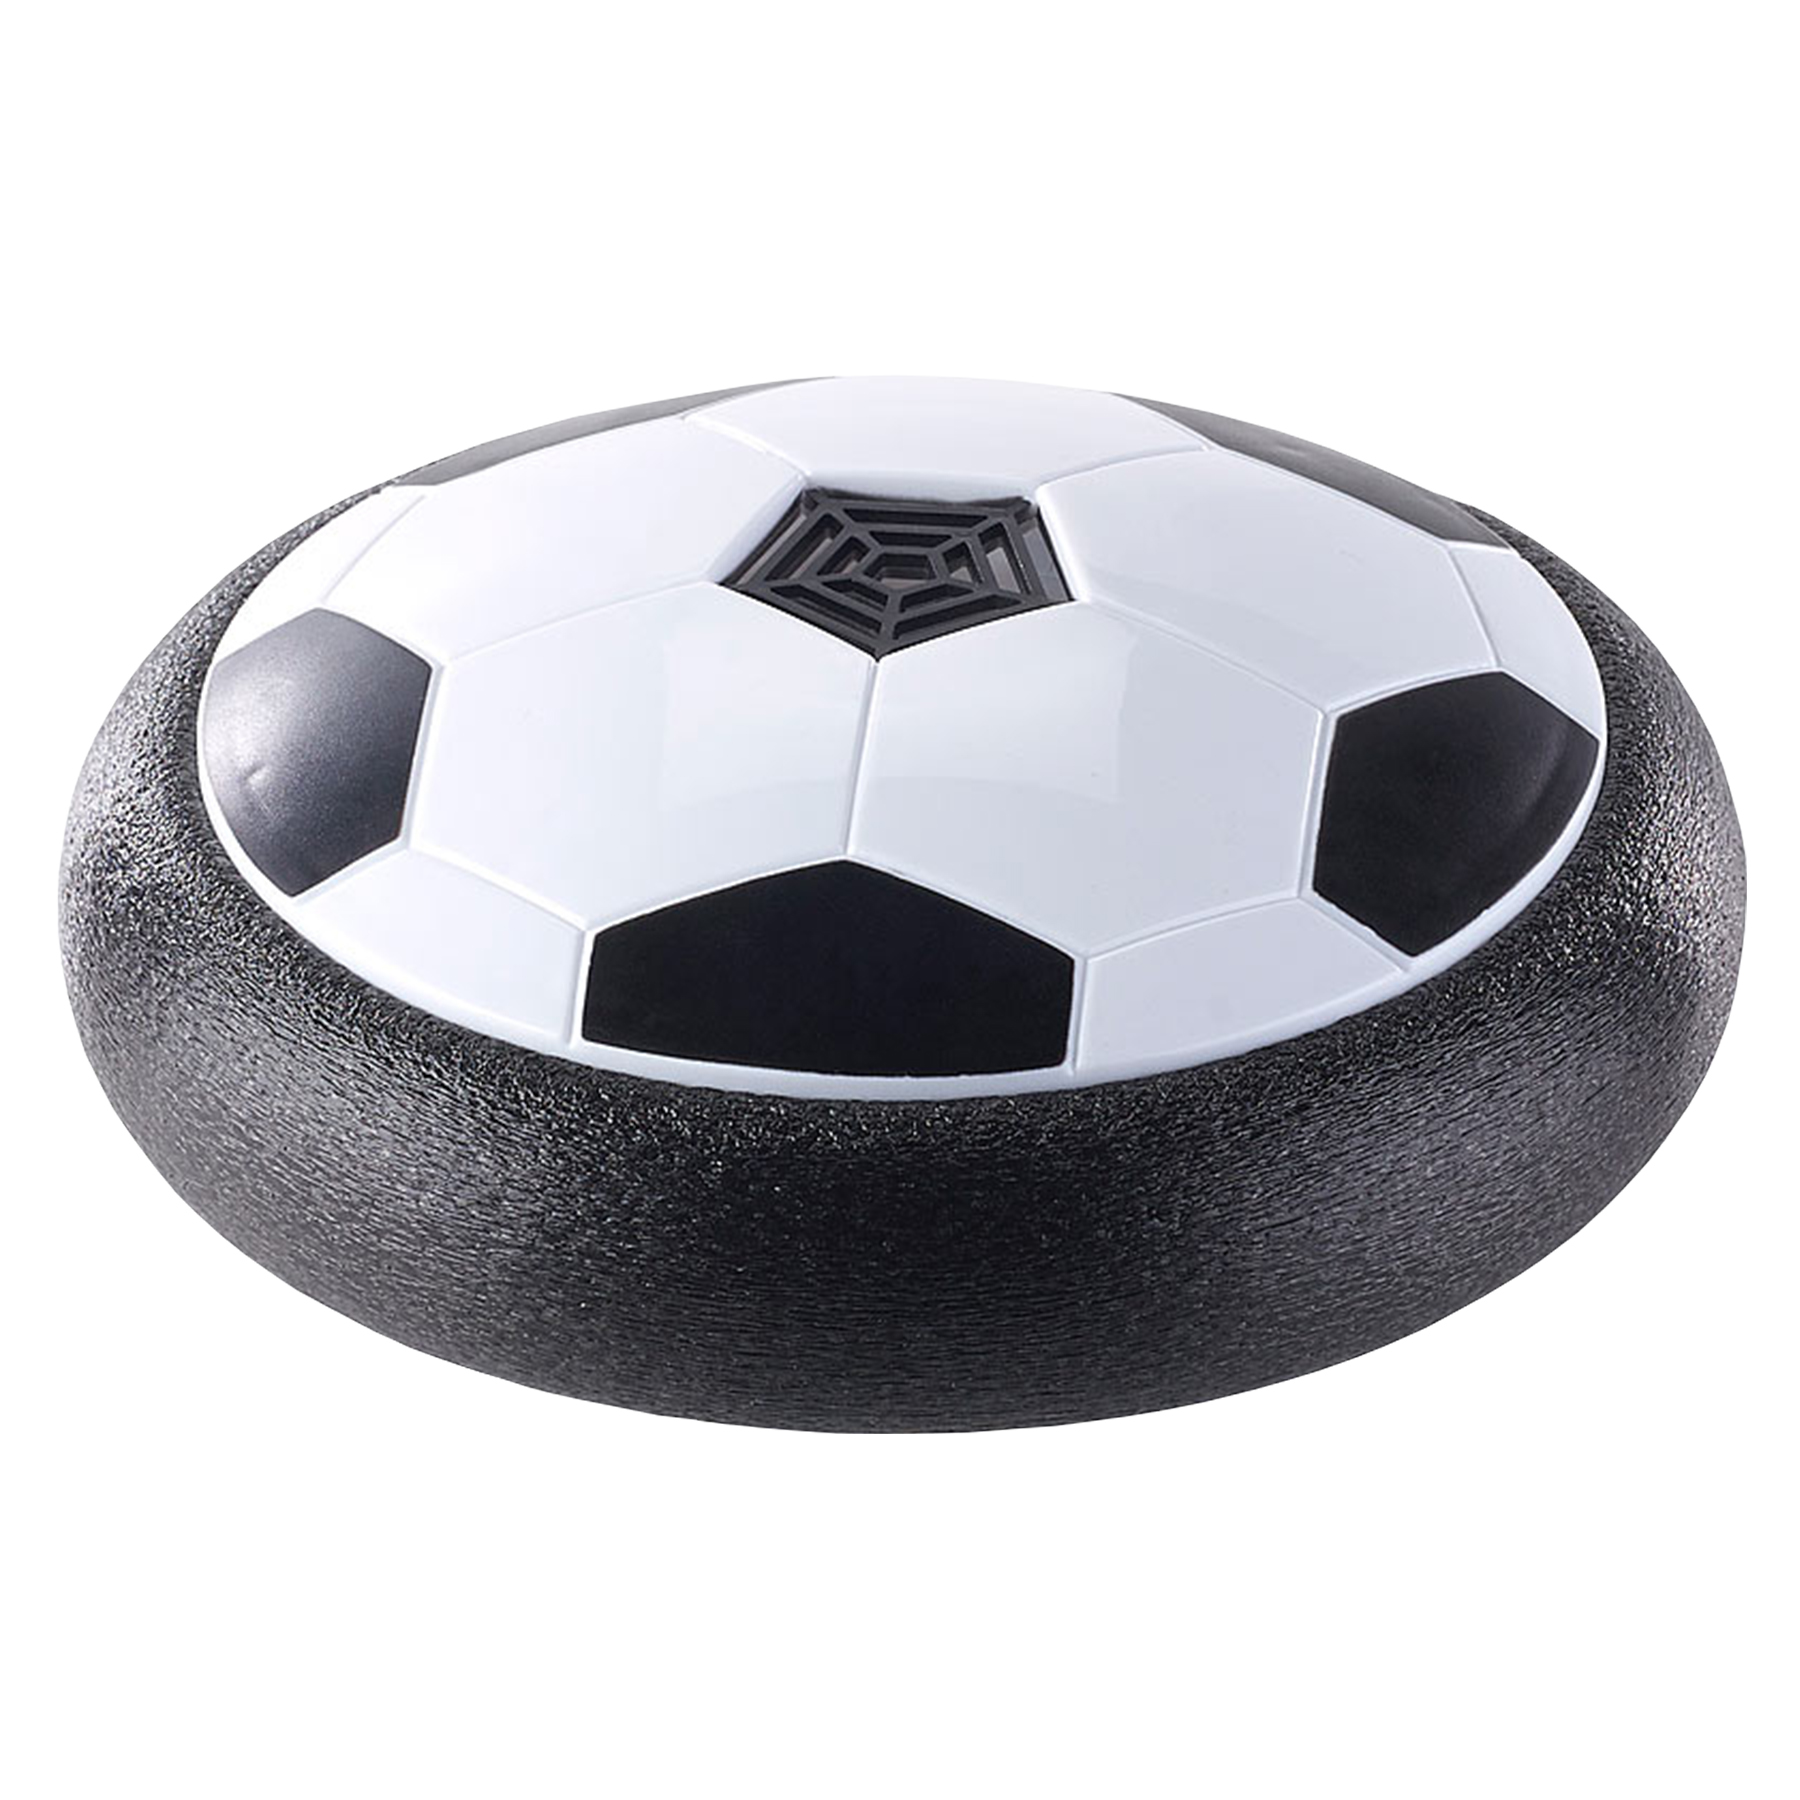 Luftkissen Fußball mit LED-Farbwechsel 3883 - 4